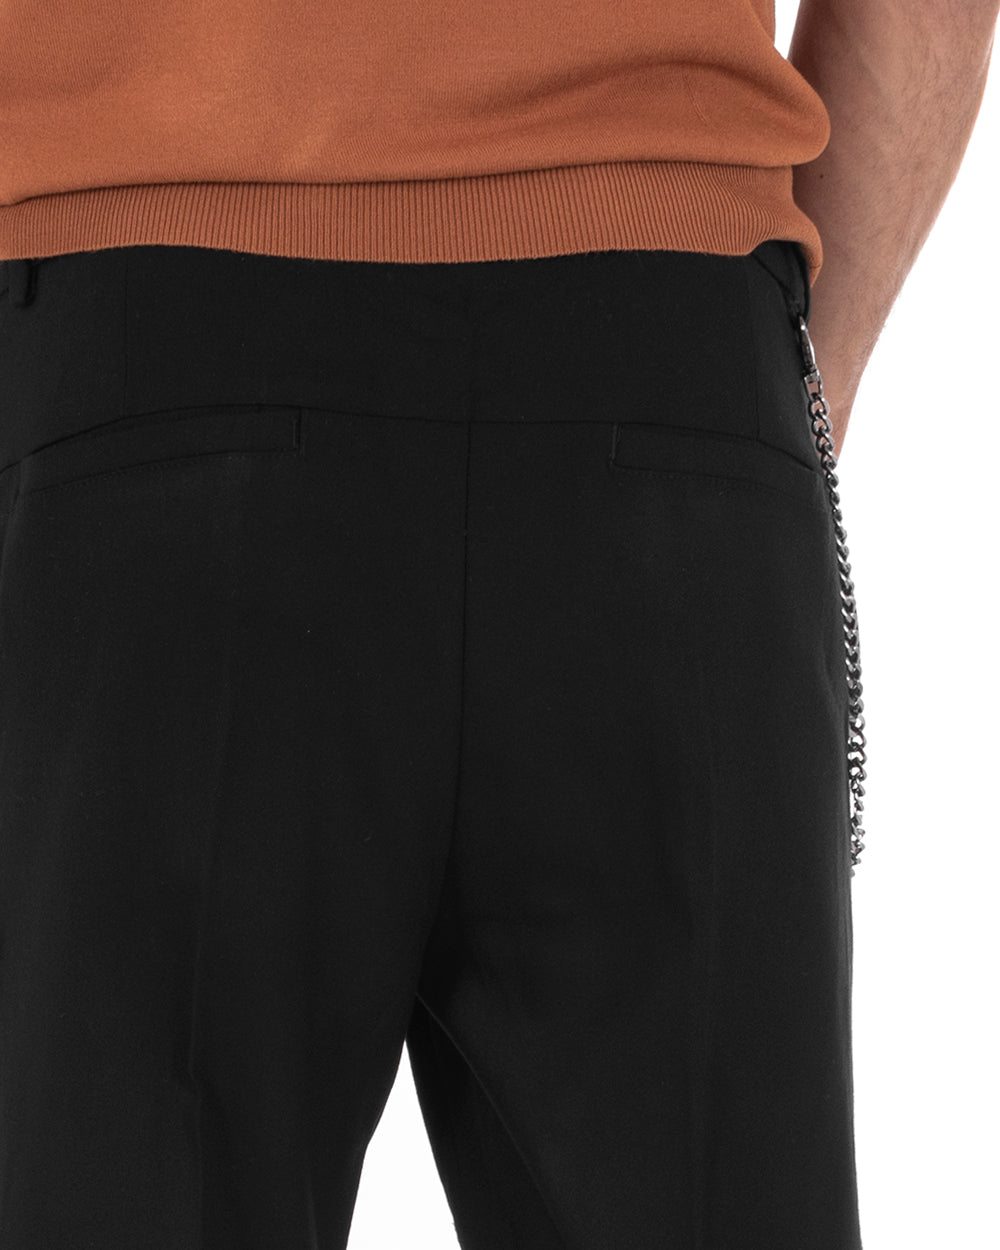 Pantaloni Uomo Lungo Tasca America Classico Viscosa Nero Melangiato Casual GIOSAL-P5740A